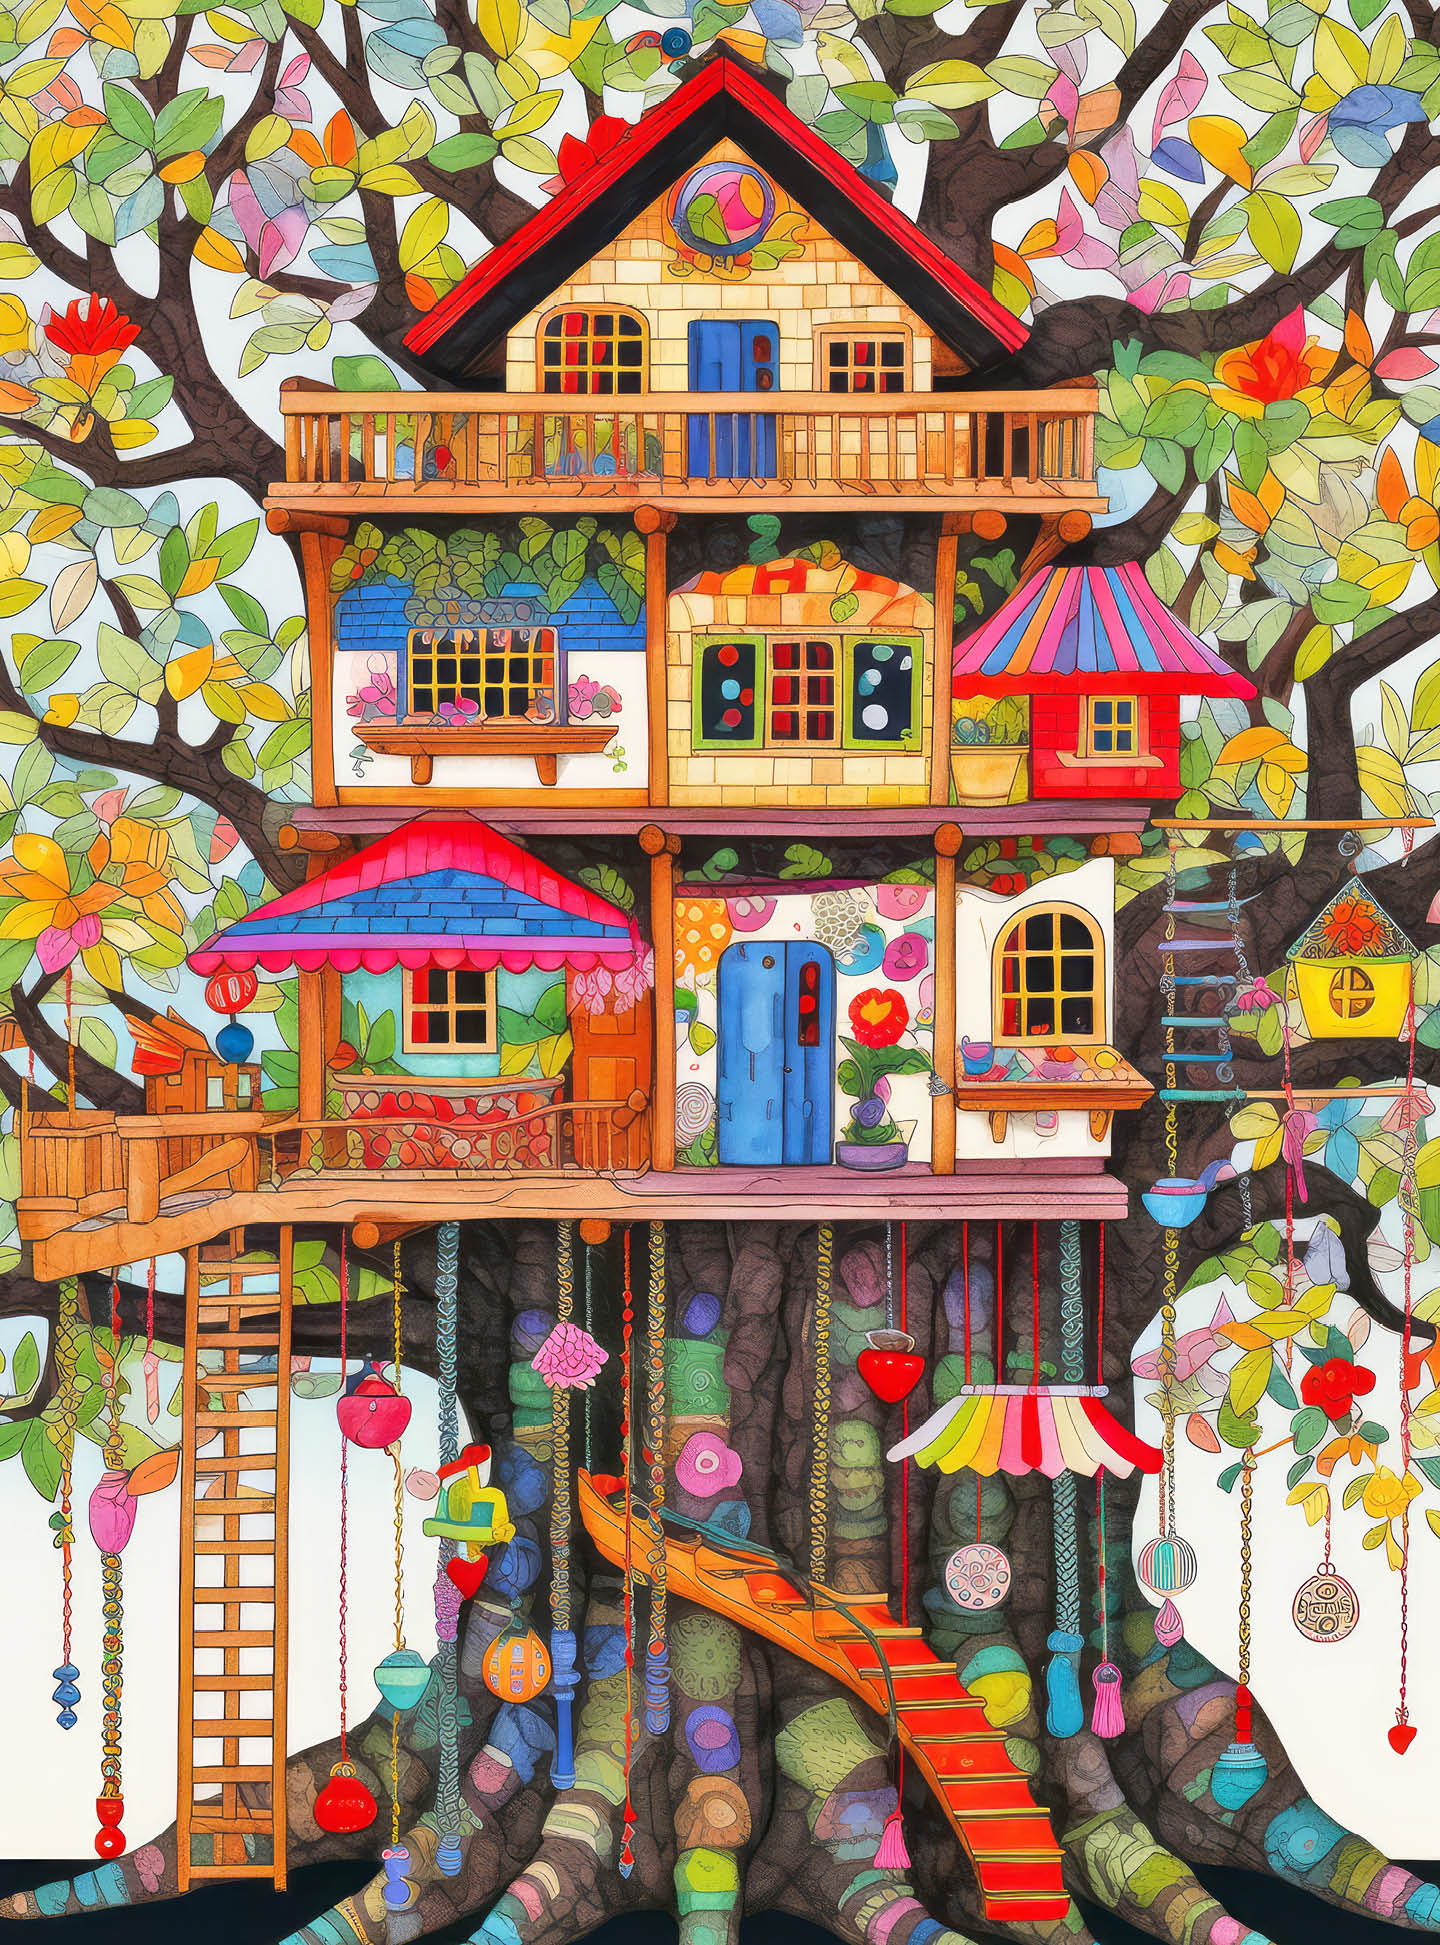 Fantastical Treehouse Escape - 1000 Piece Jigsaw Puzzle